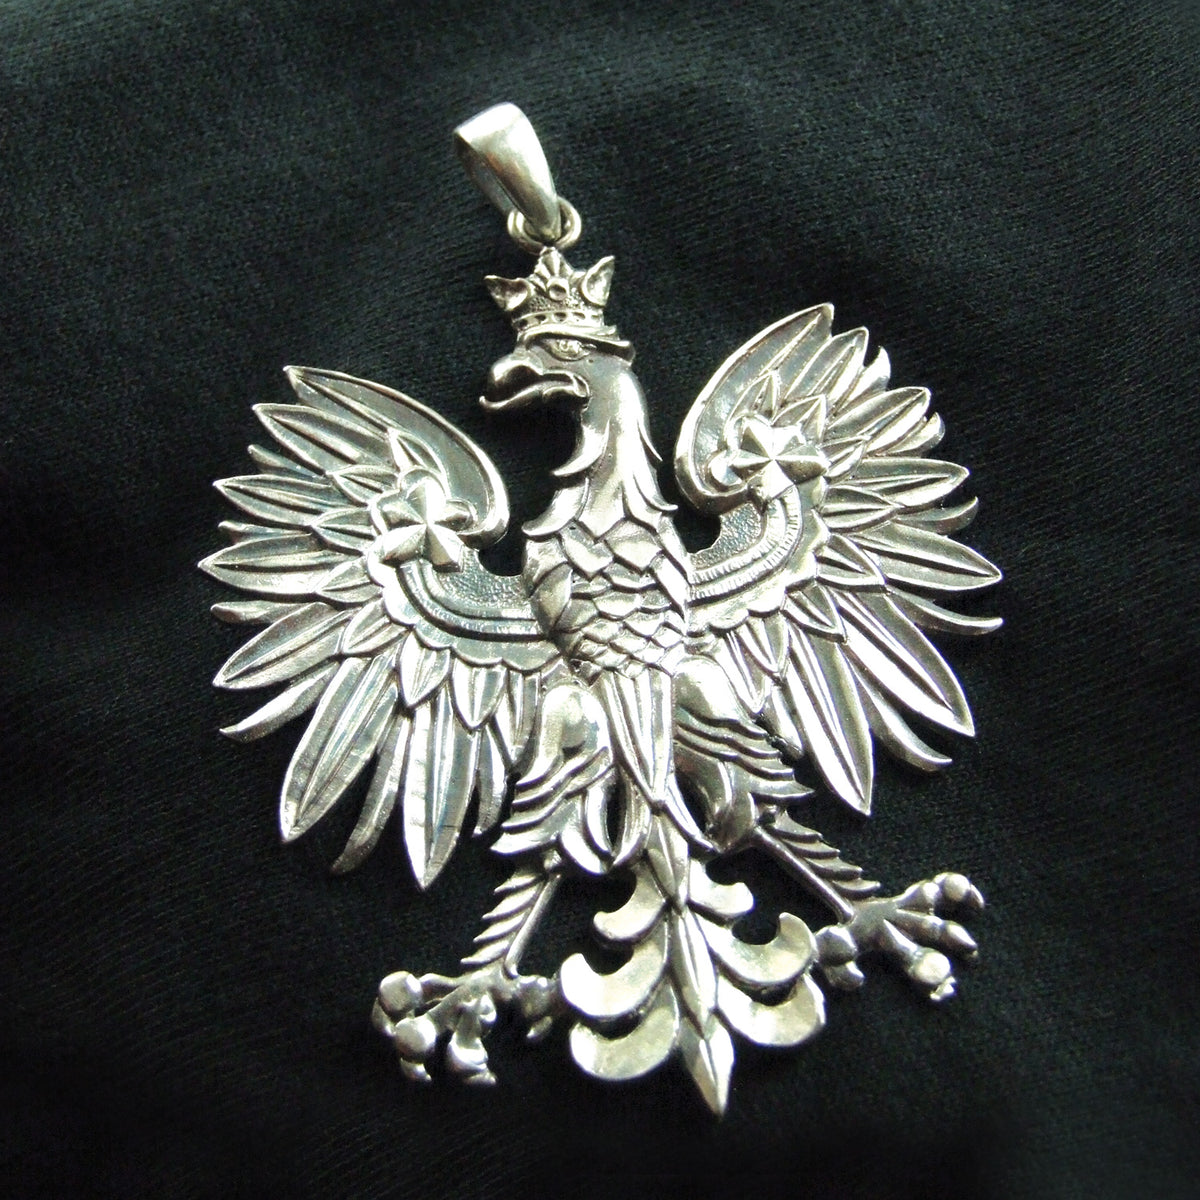 Polish Eagle Silver Pendant 1 Long